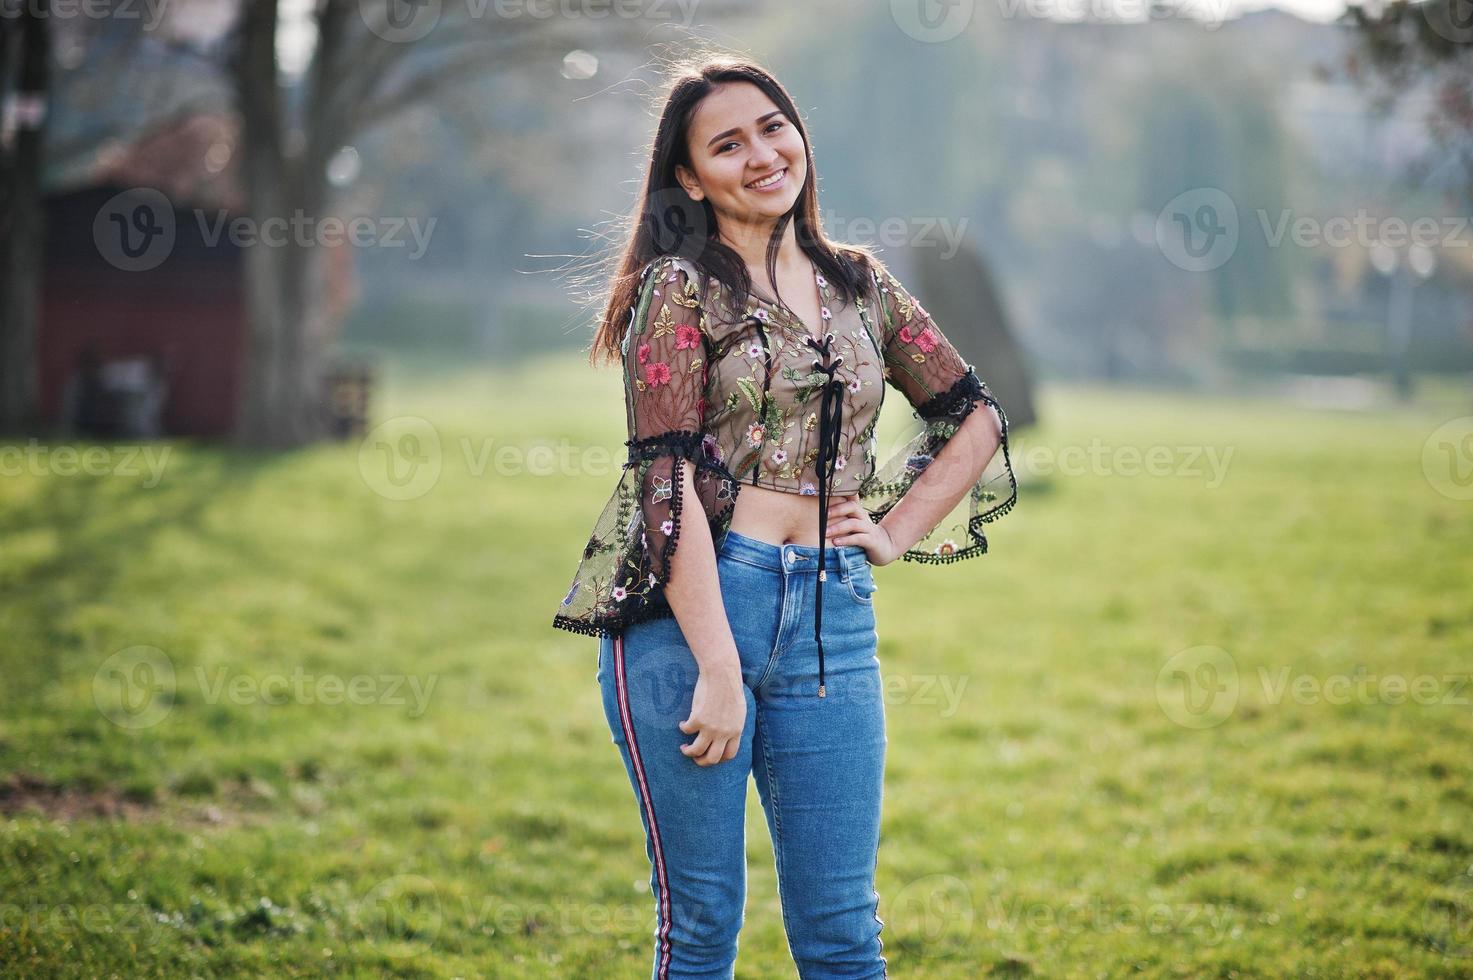 Bonita chica modelo latina de ecuador usa jeans posados en la calle. foto